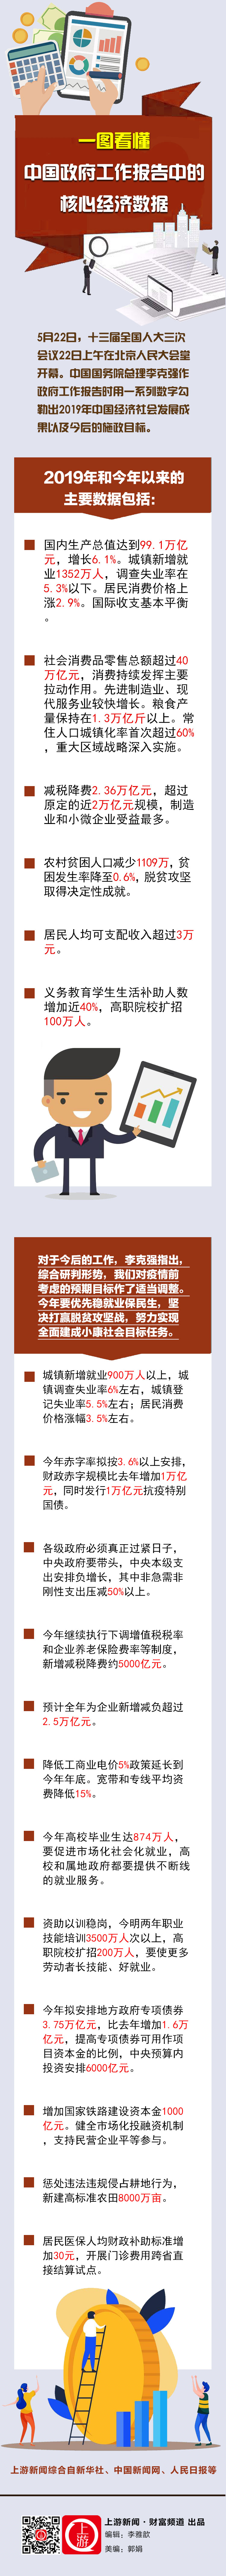 中国政府工作报告中的核心经济数据20200522(1).jpg